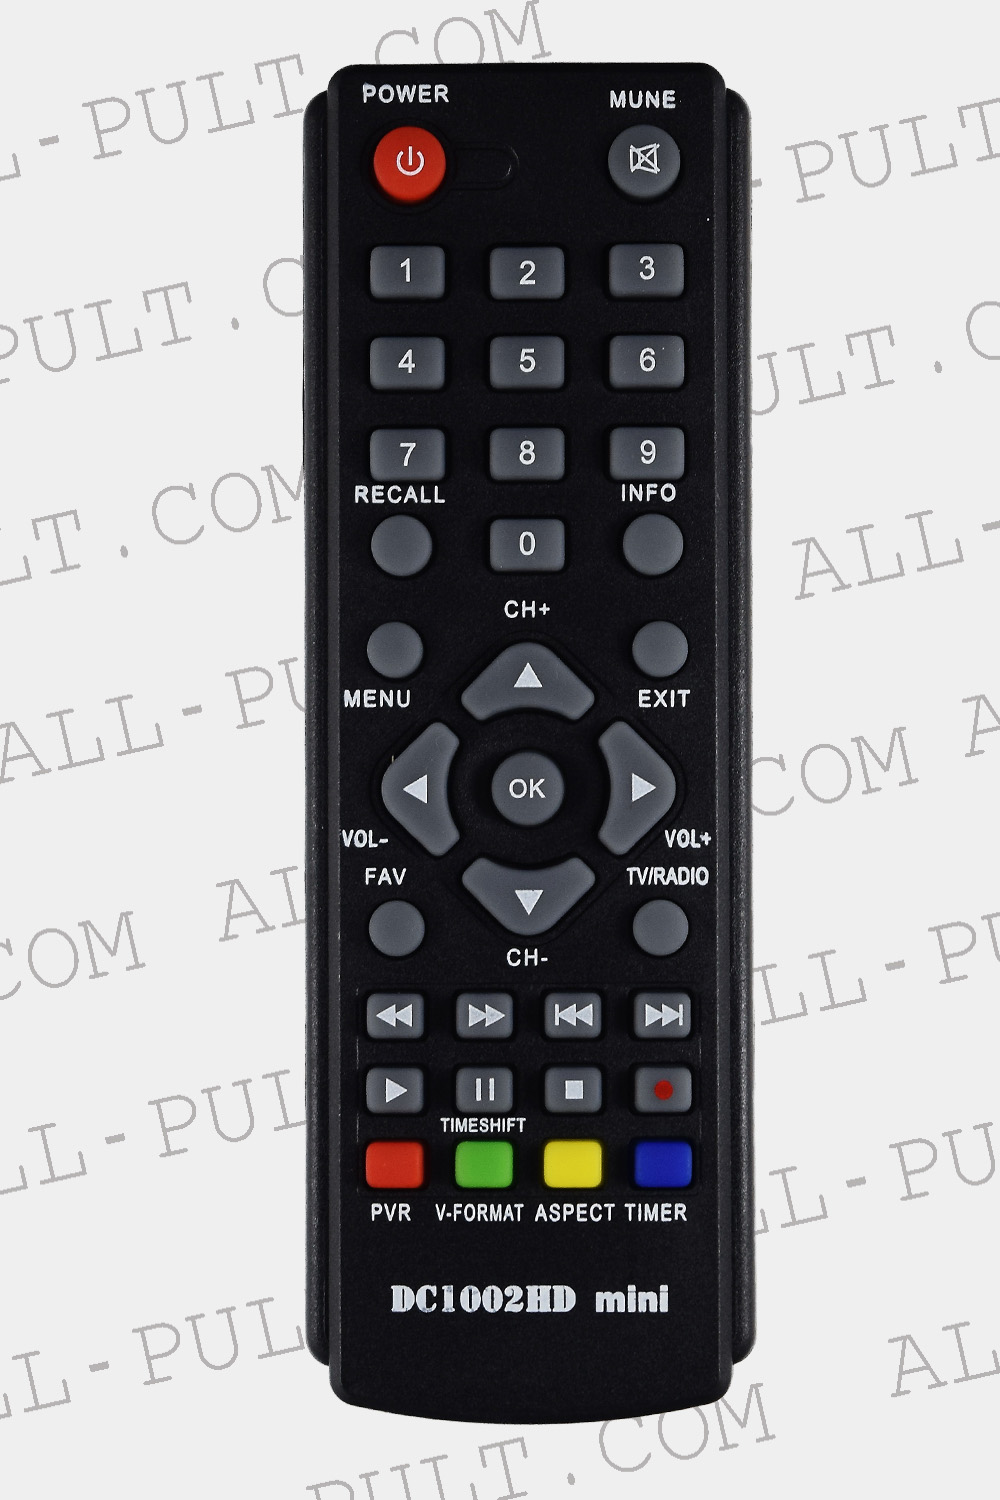 Пульт для DVB-T2 тюнера D-Color DC1002HD mini, фото